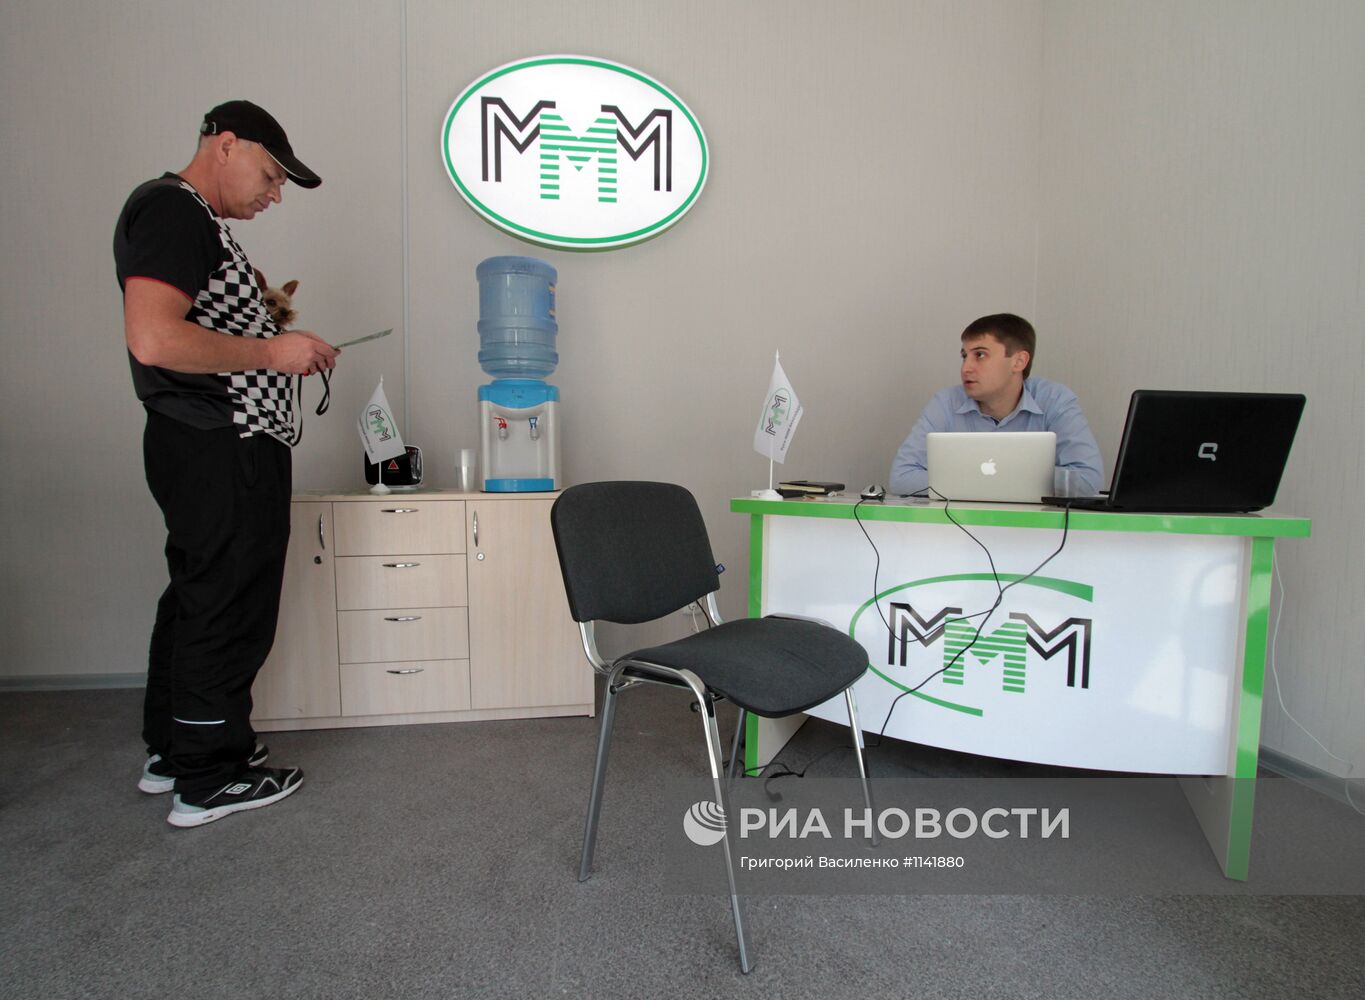 Работа офиса "МММ 2011" в Киеве